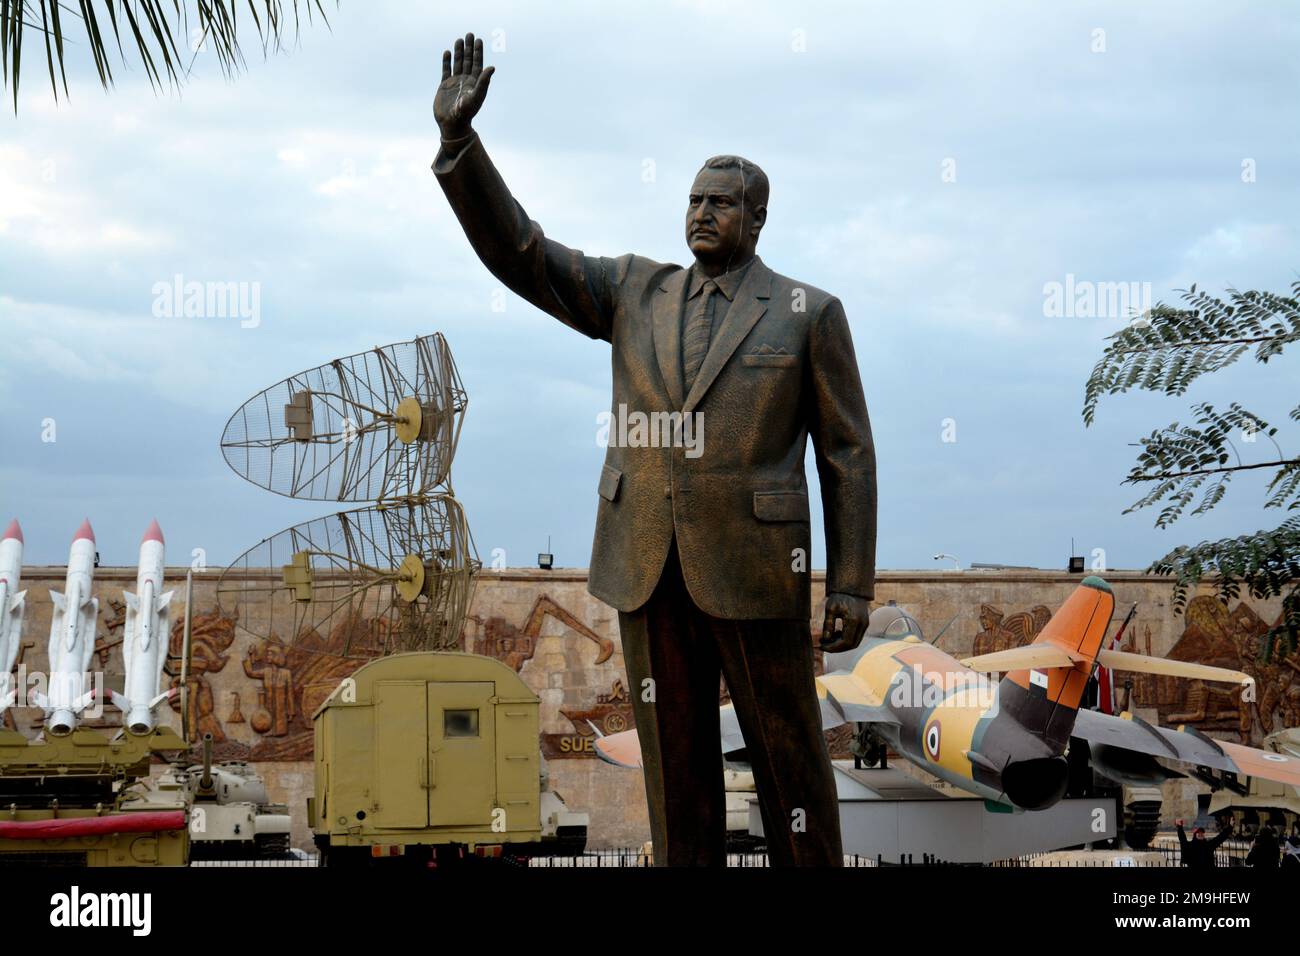 Le Caire, Egypte, 7 janvier 2023: Gamal Abdel Nasser statue, le deuxième président de l'Egypte, chef de la révolution égyptienne, du militar national égyptien Banque D'Images